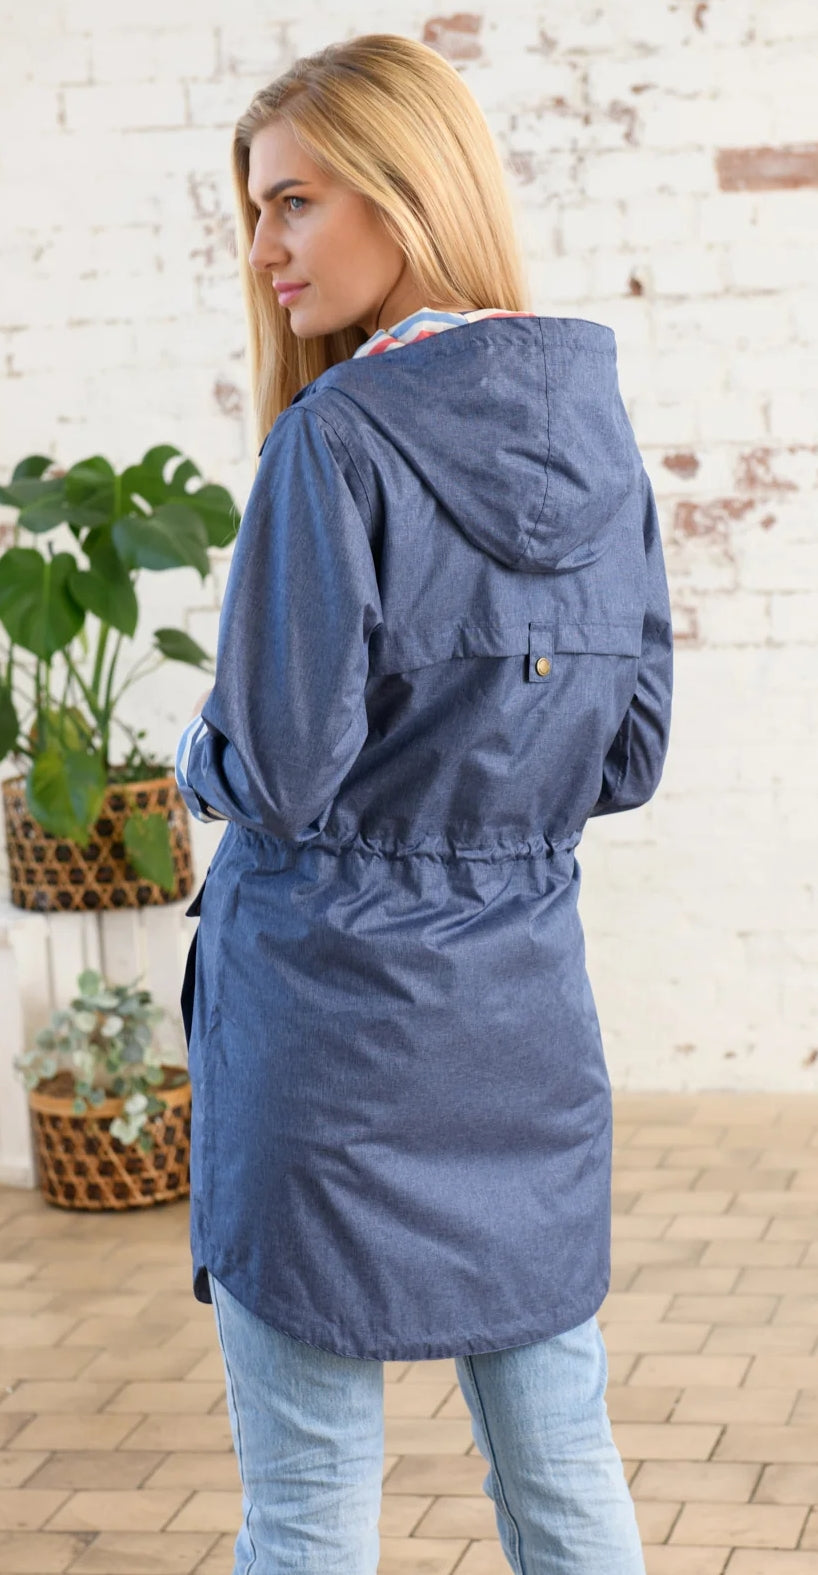 Women's Alice style waterproof rain jacket from Lighthouse in Denim Blue.